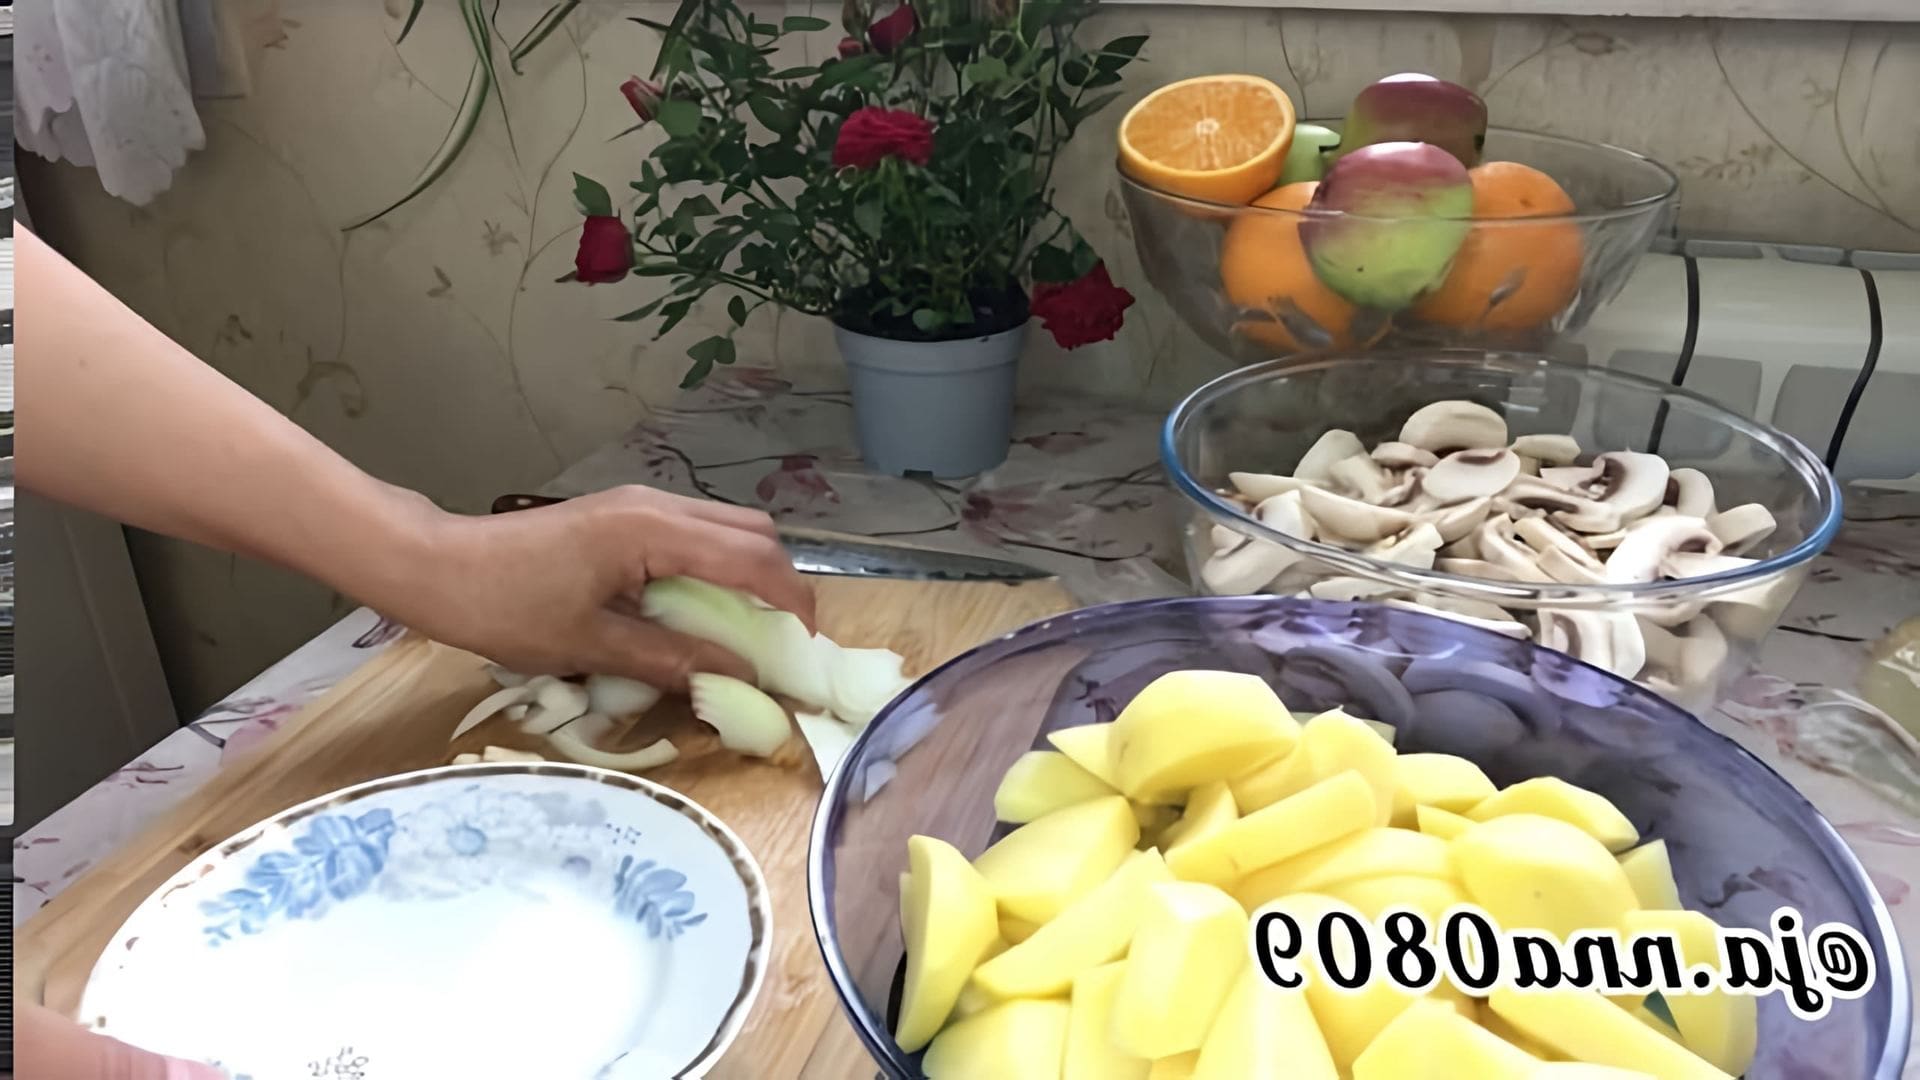 В этом видео-ролике показан процесс приготовления вкусного блюда - картошки с грибами в сливках